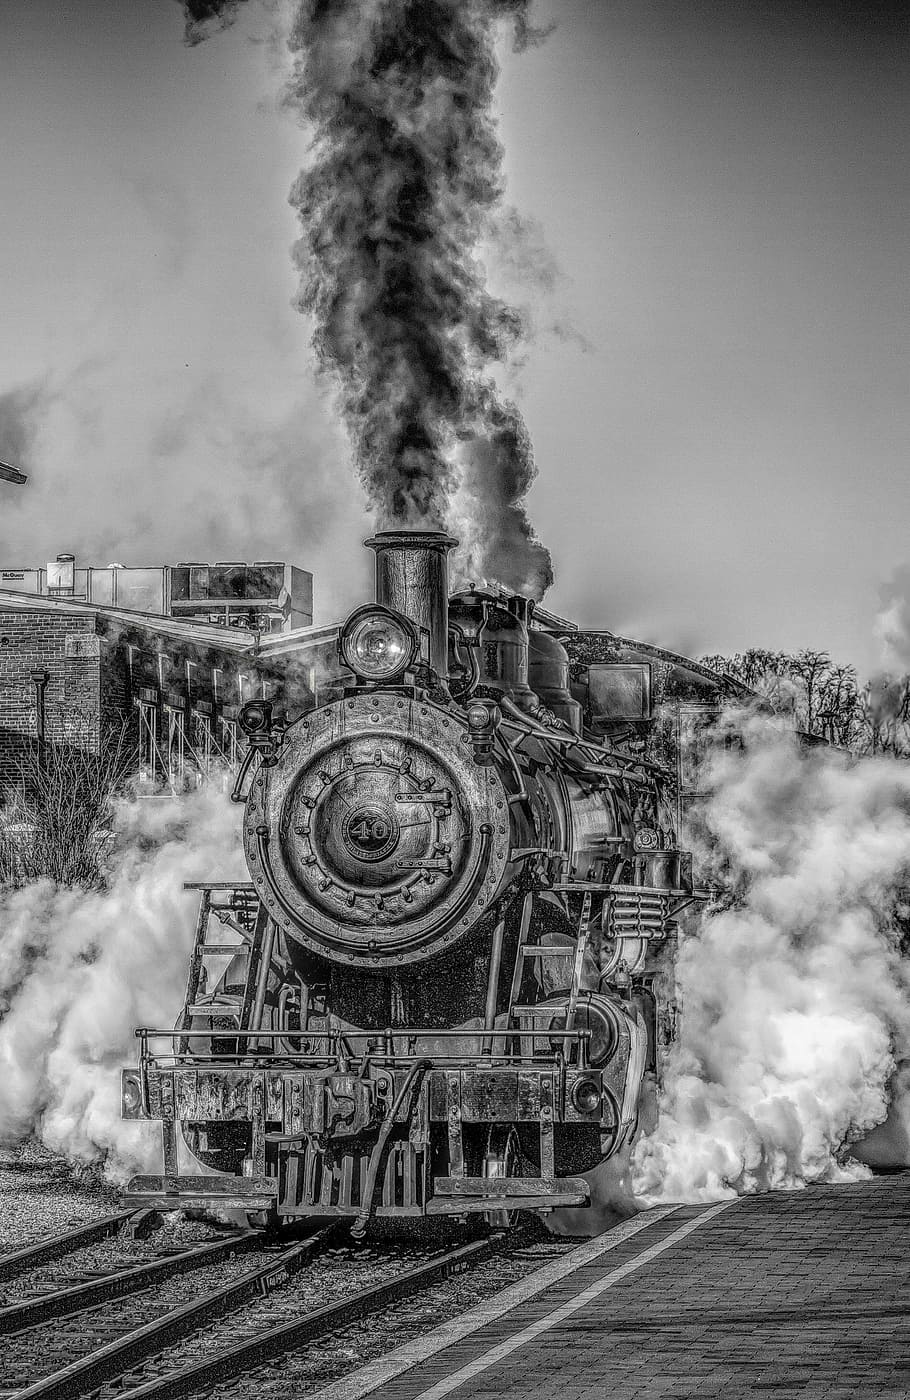 グレースケール写真, 電車, 蒸気機関車, 蒸気機関, 鉄道, 煙, 蒸気, hdr, 白黒, 電力